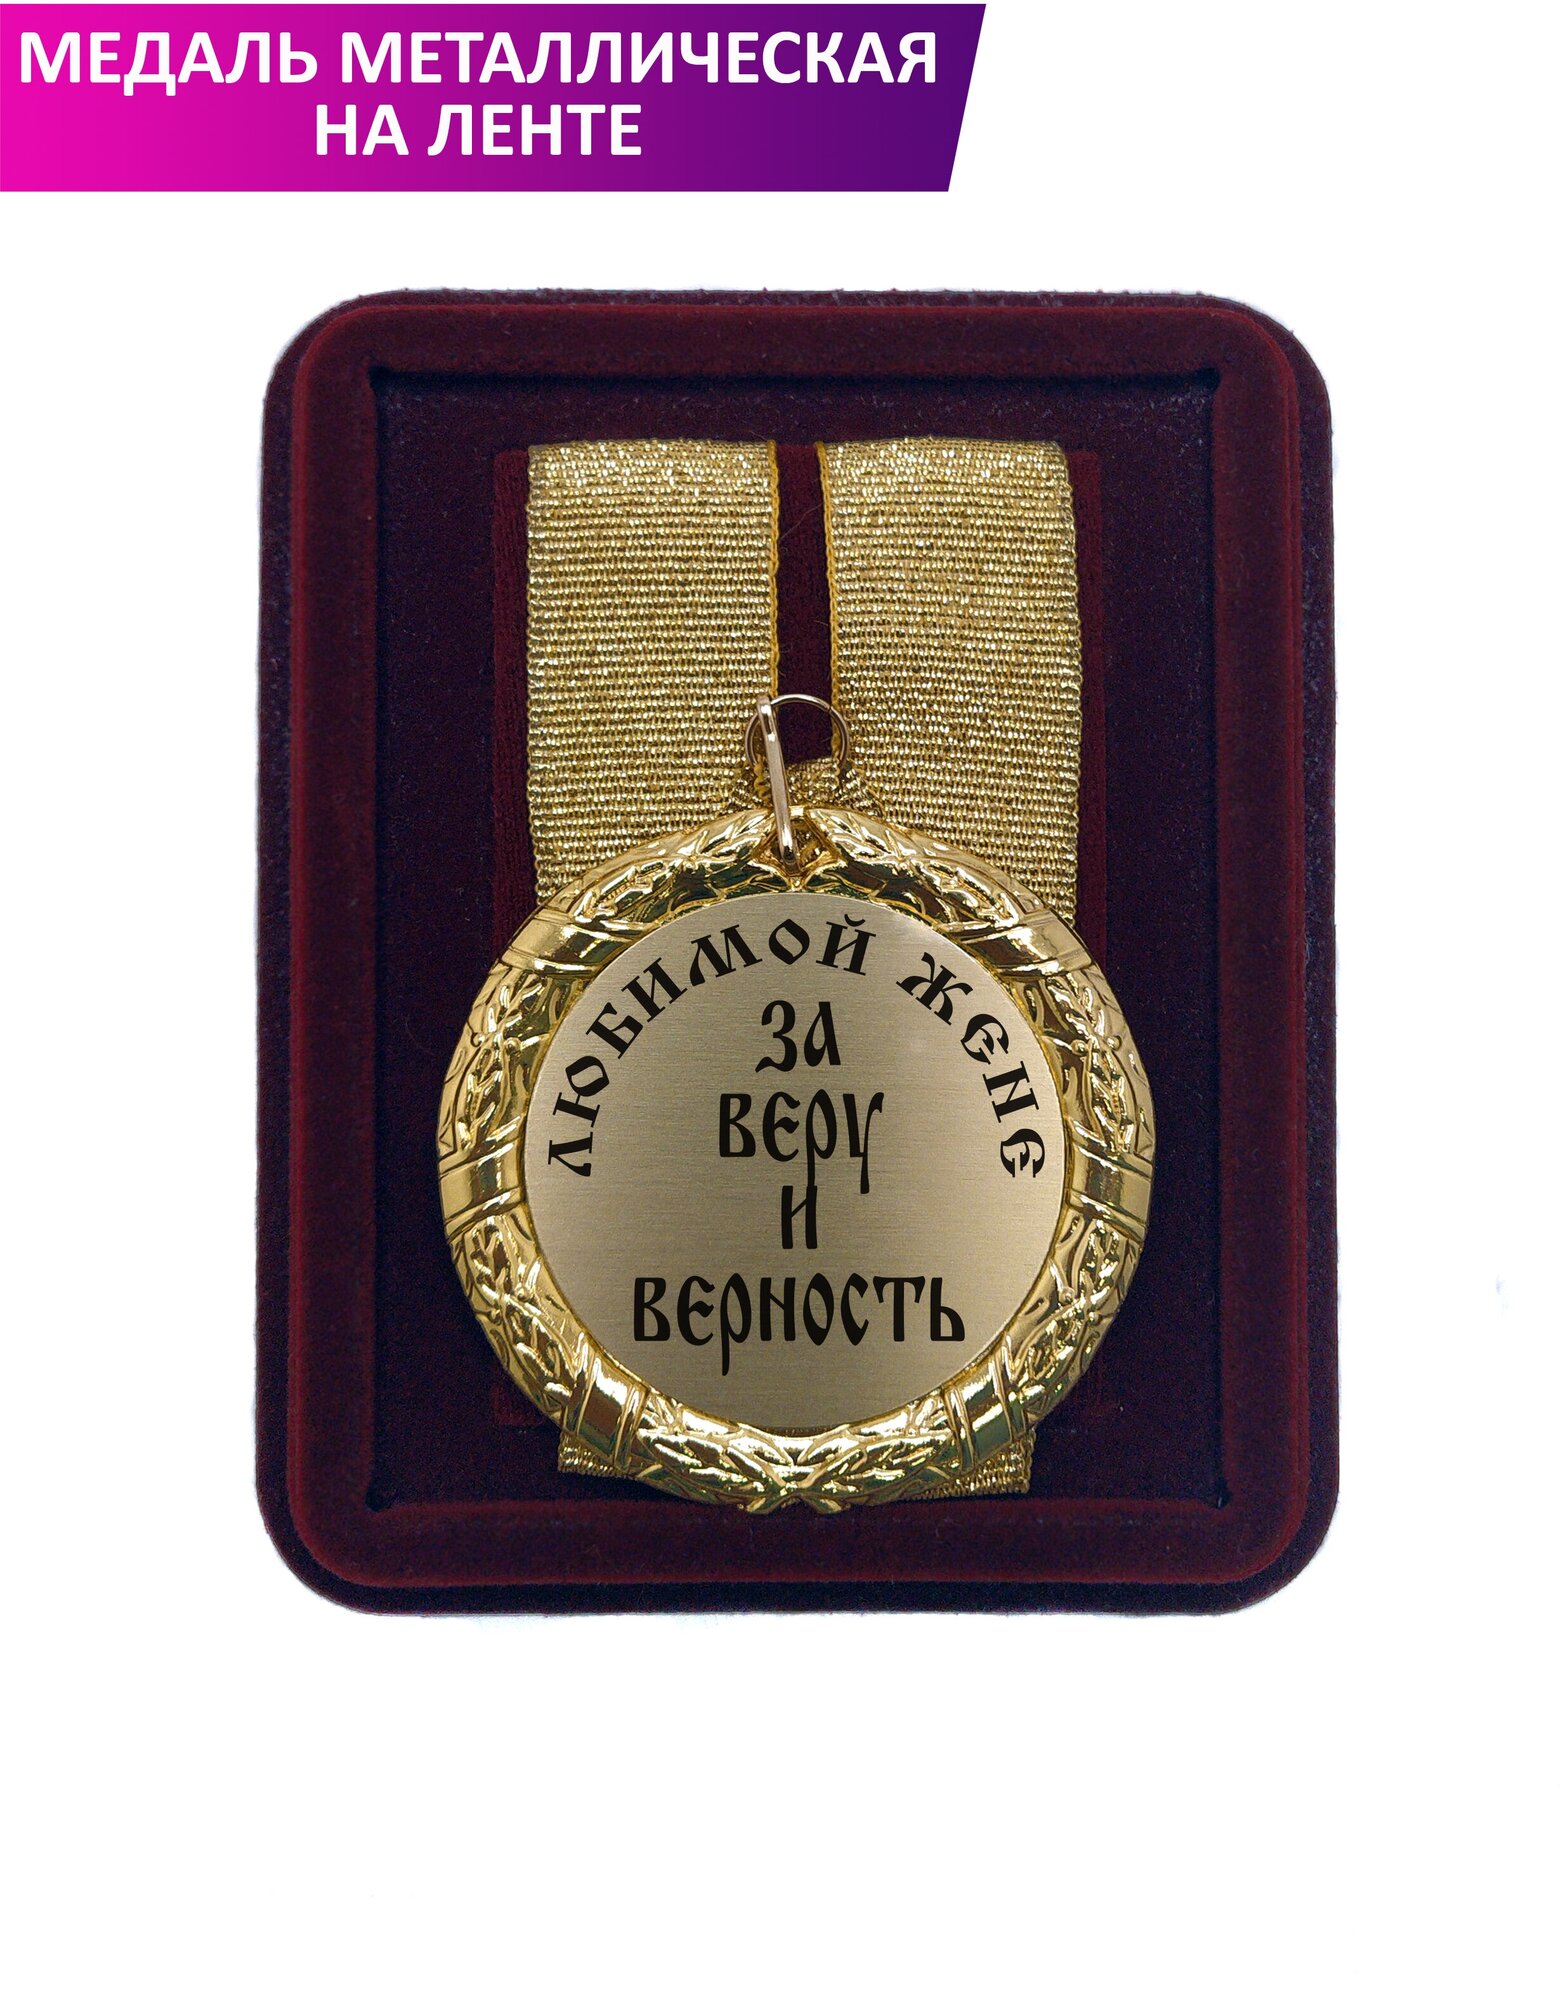 Медаль подарочная "Любимой жене за веру и верность"